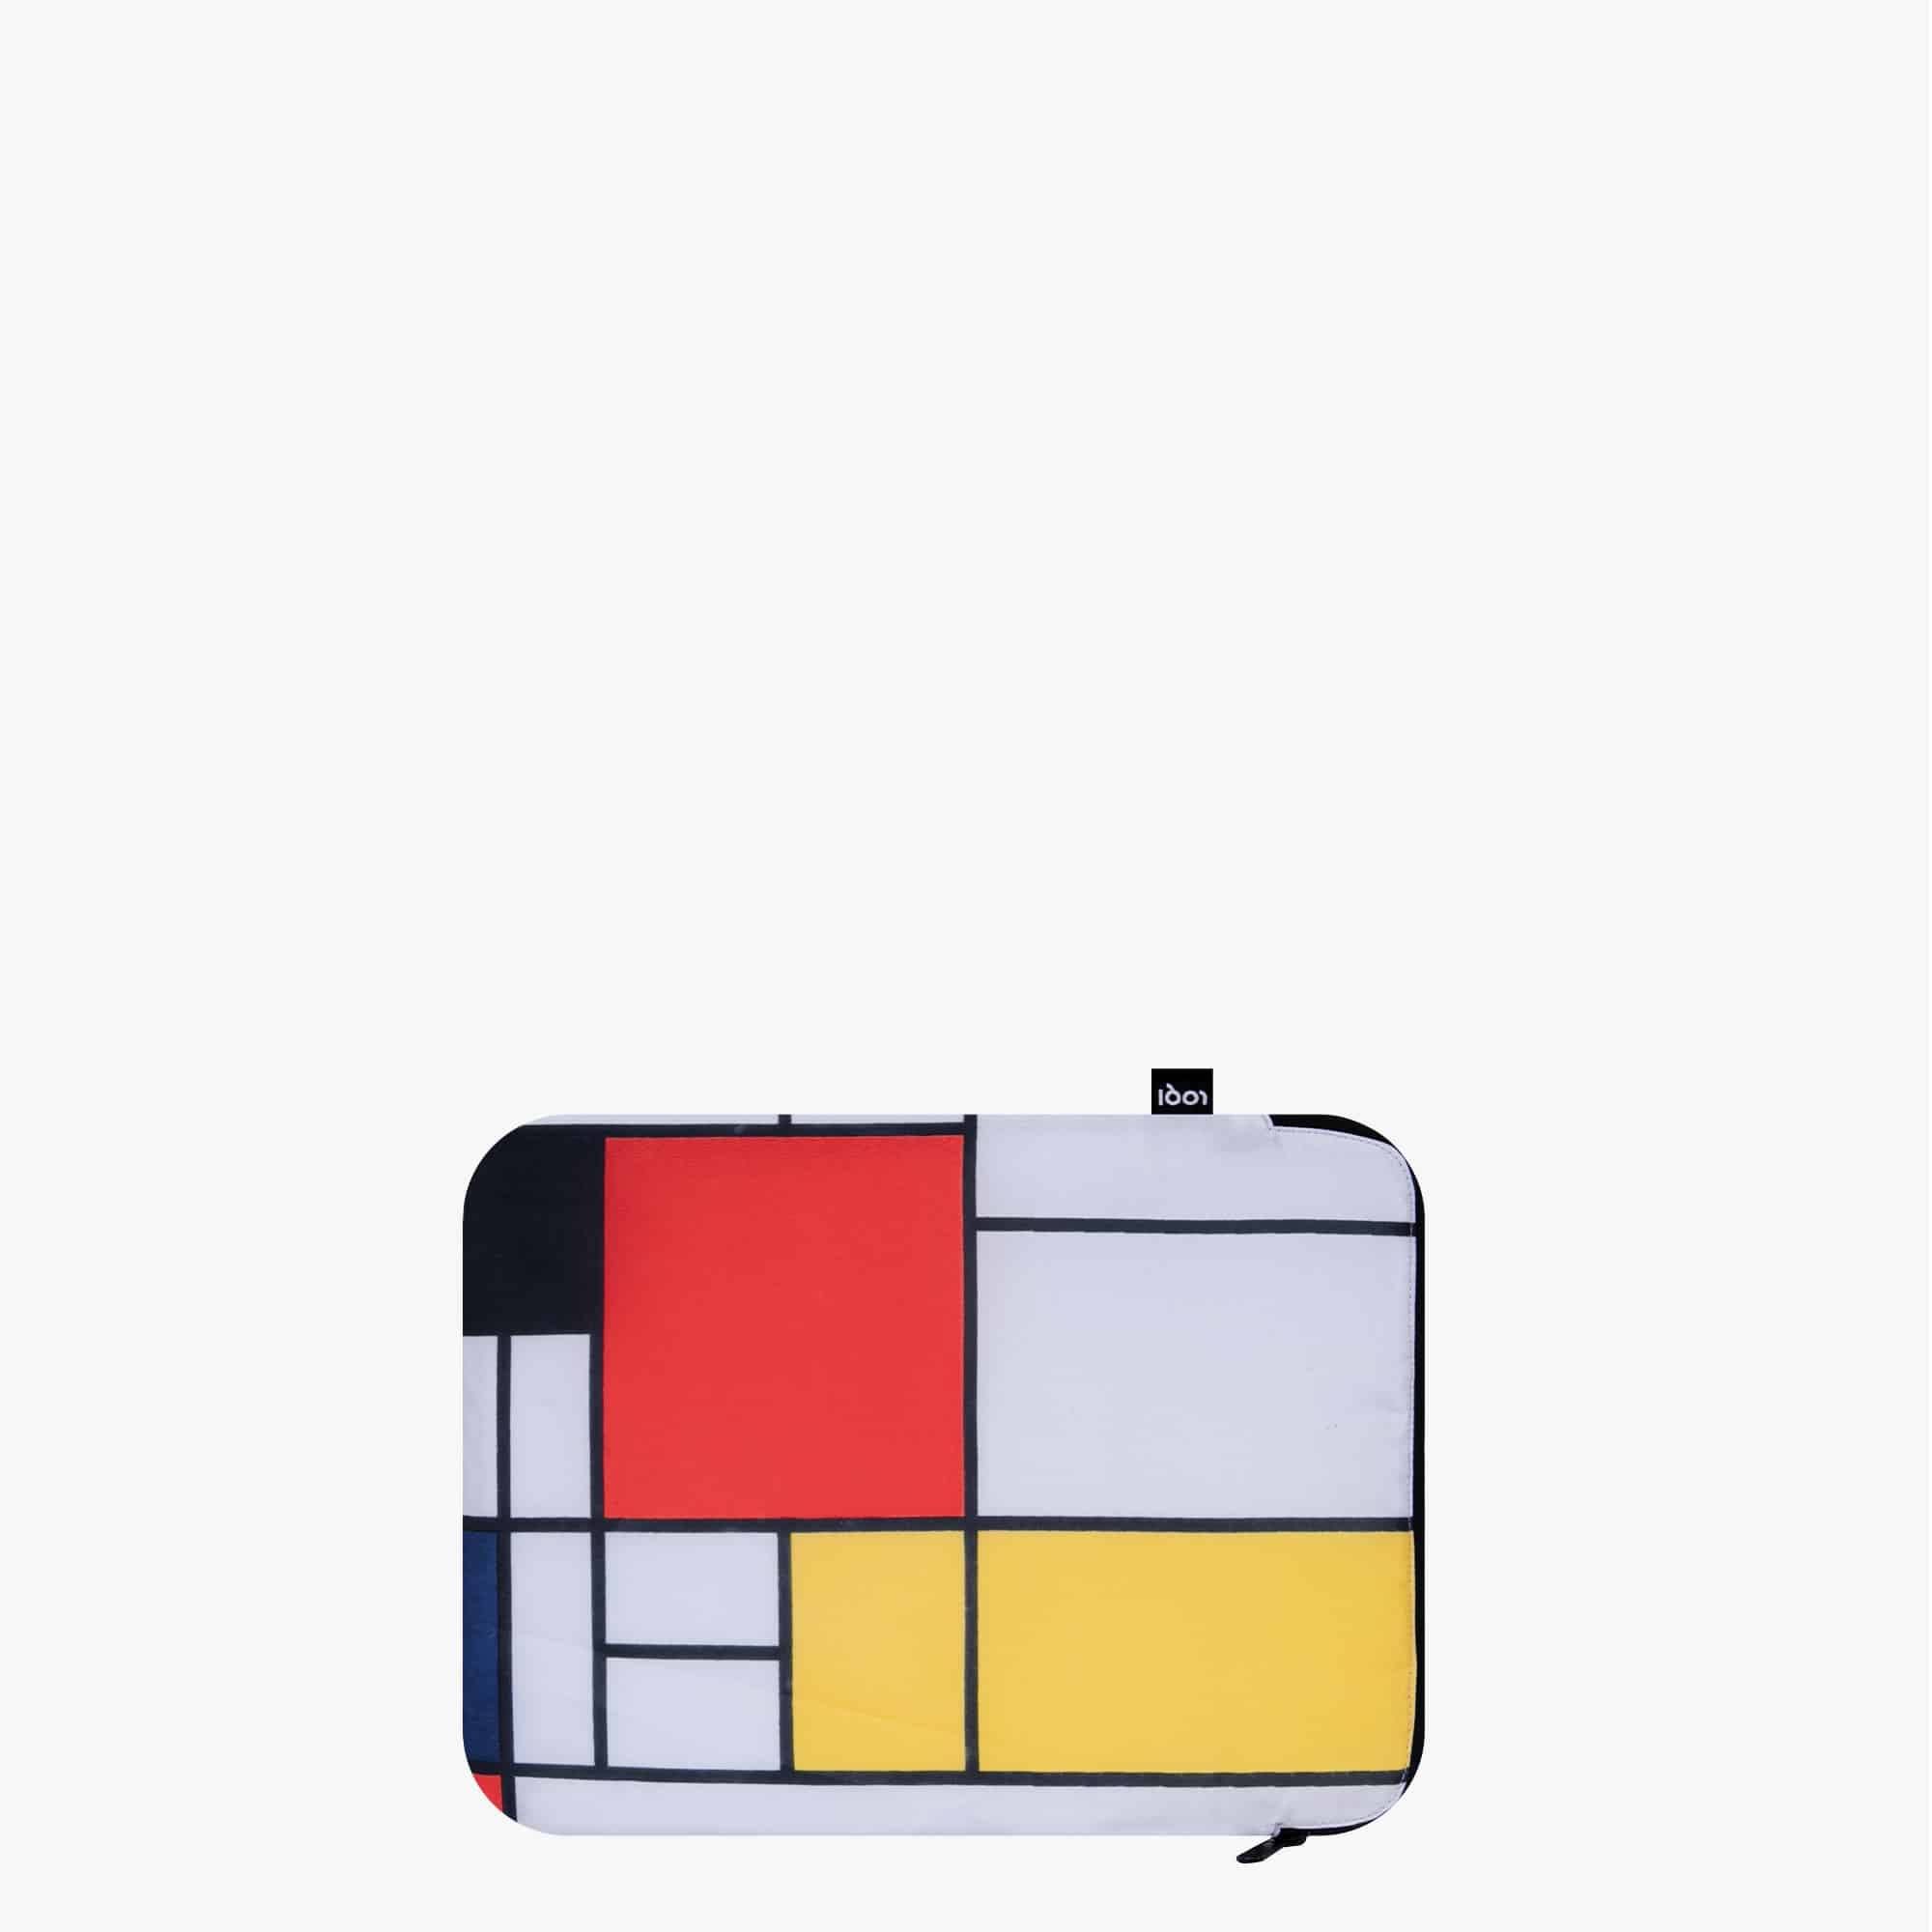 כיסוי מעטפת למחשב נייד – “קומפזיציה באדום, צהוב וכחול” של פיט מונדריאן (1921)